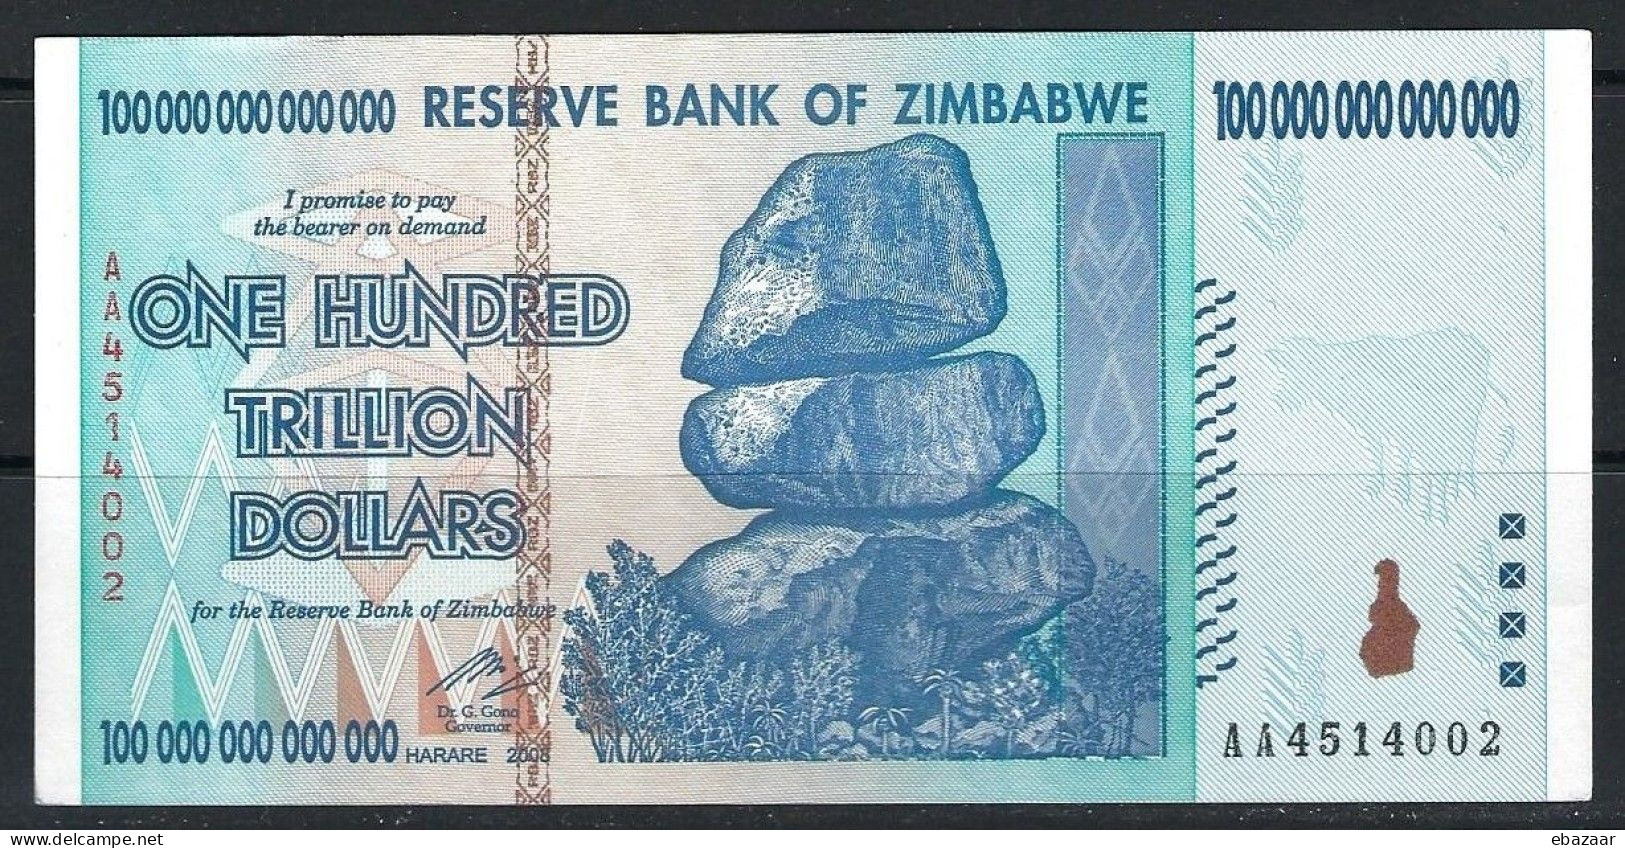 Zimbabwe 2008 Banknote 100 TRILLION Dollars ($100.000.000.000.000) P-91 AUNC - Zimbabwe